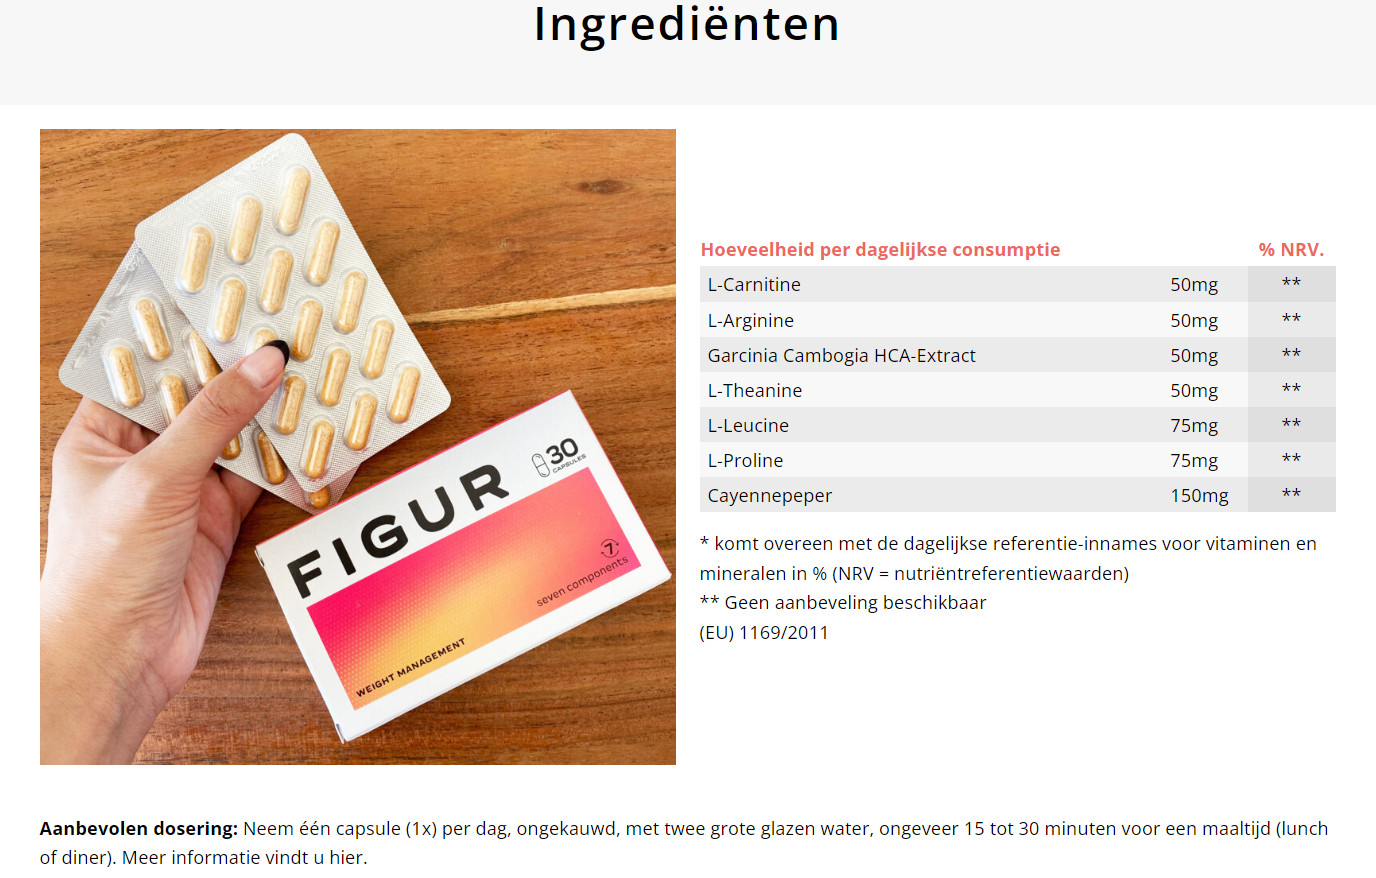 Figur Nederland Ingredients